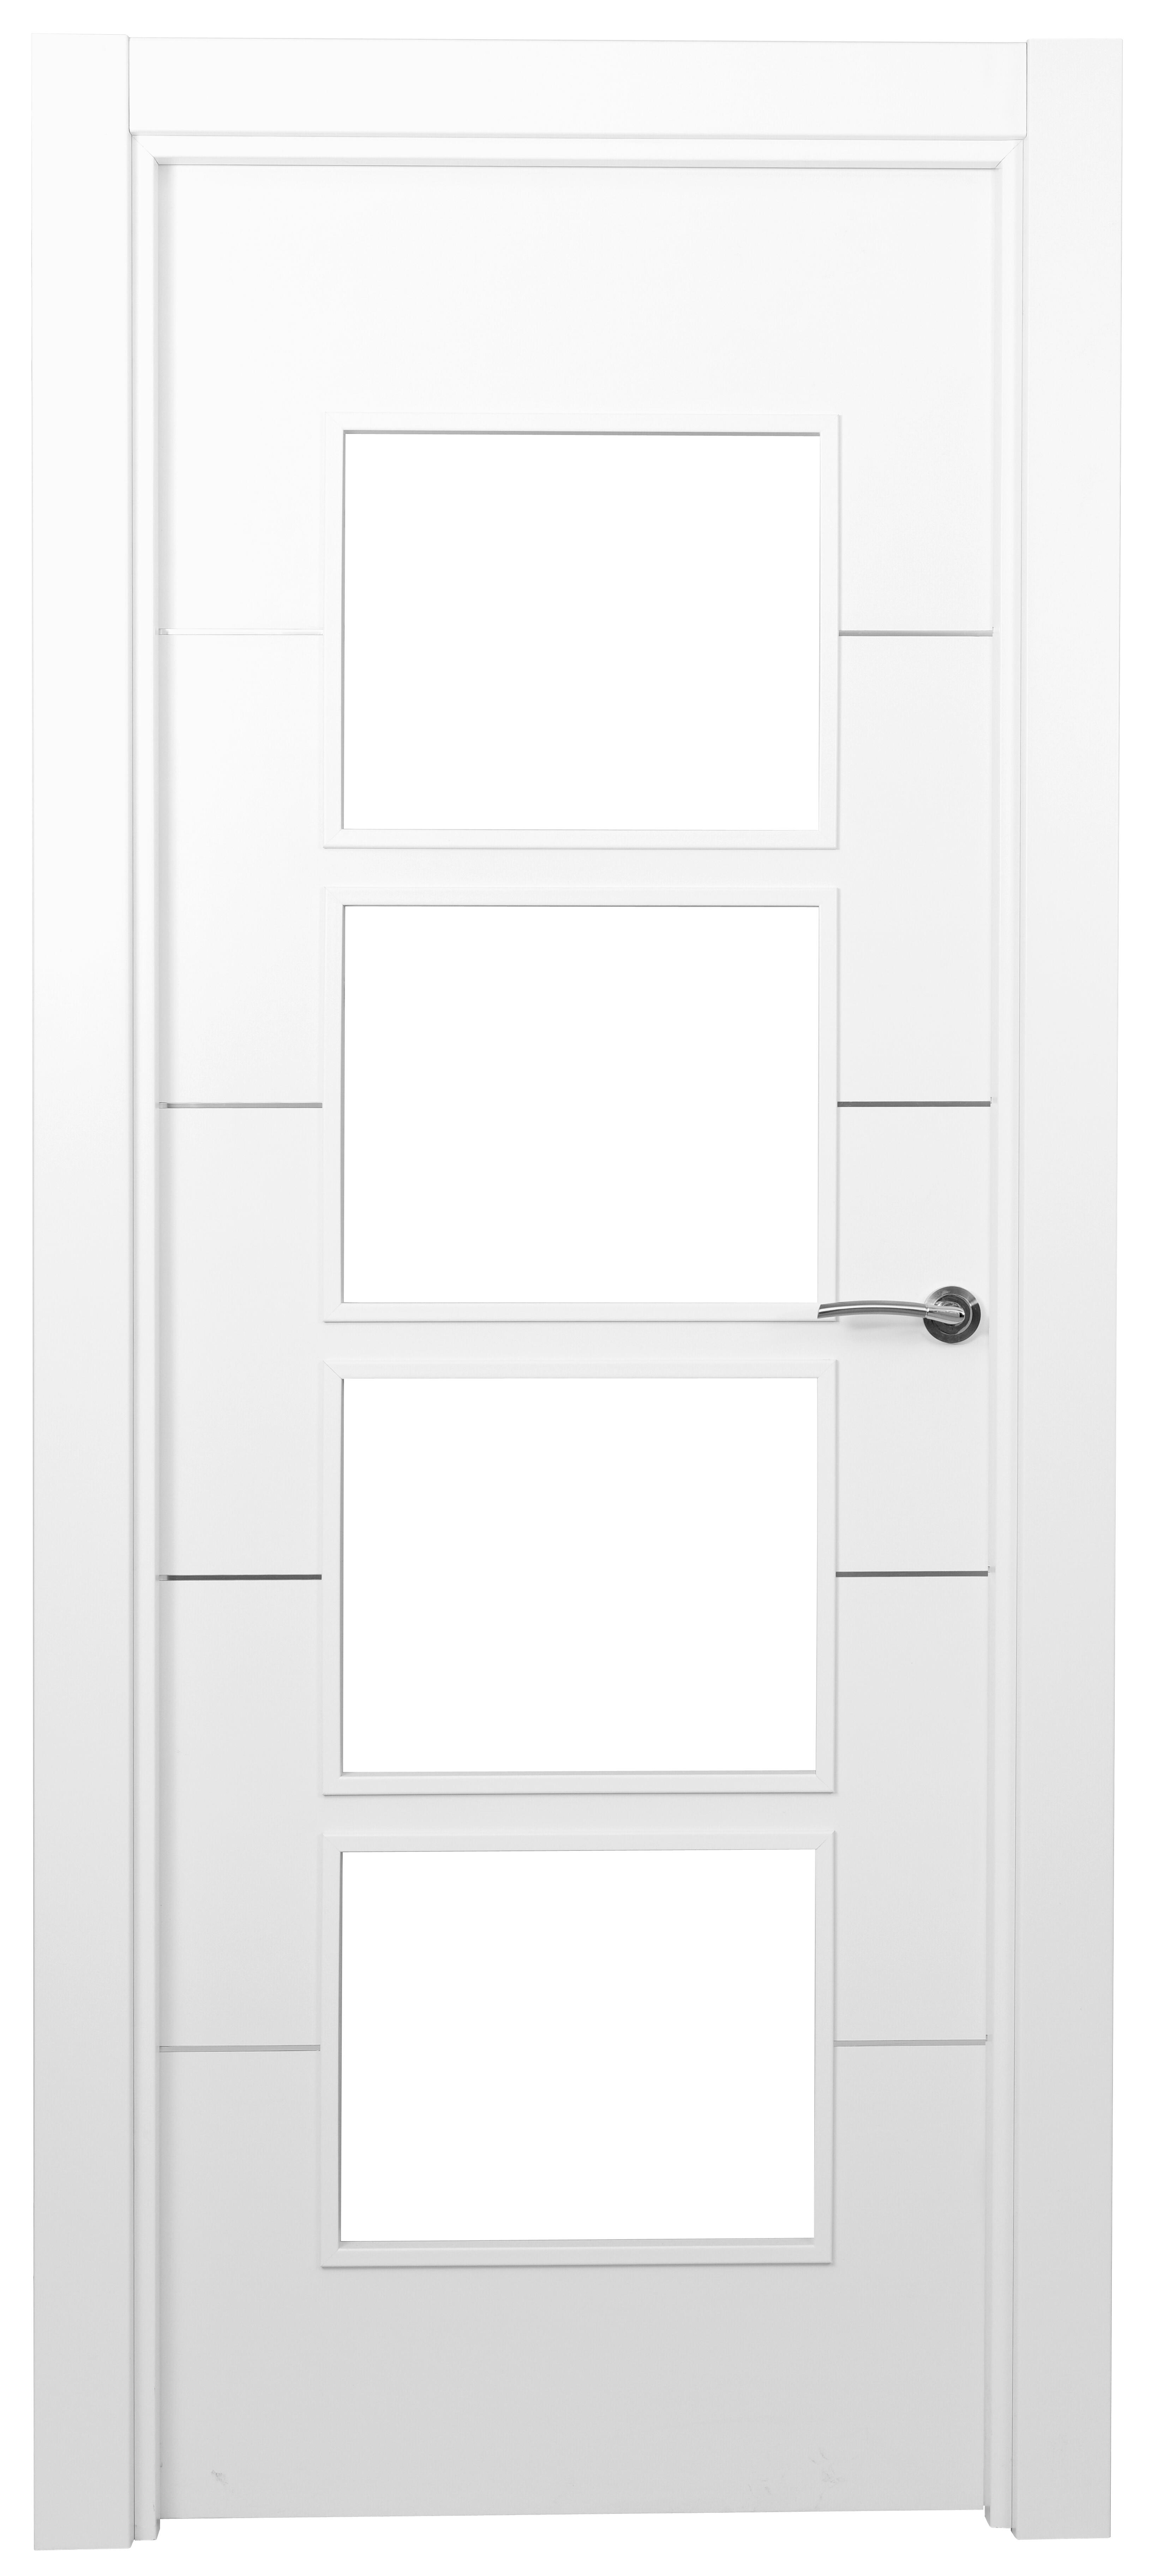 Puerta paris premium blanco apertura izquierda con cristal 9x82.5cm